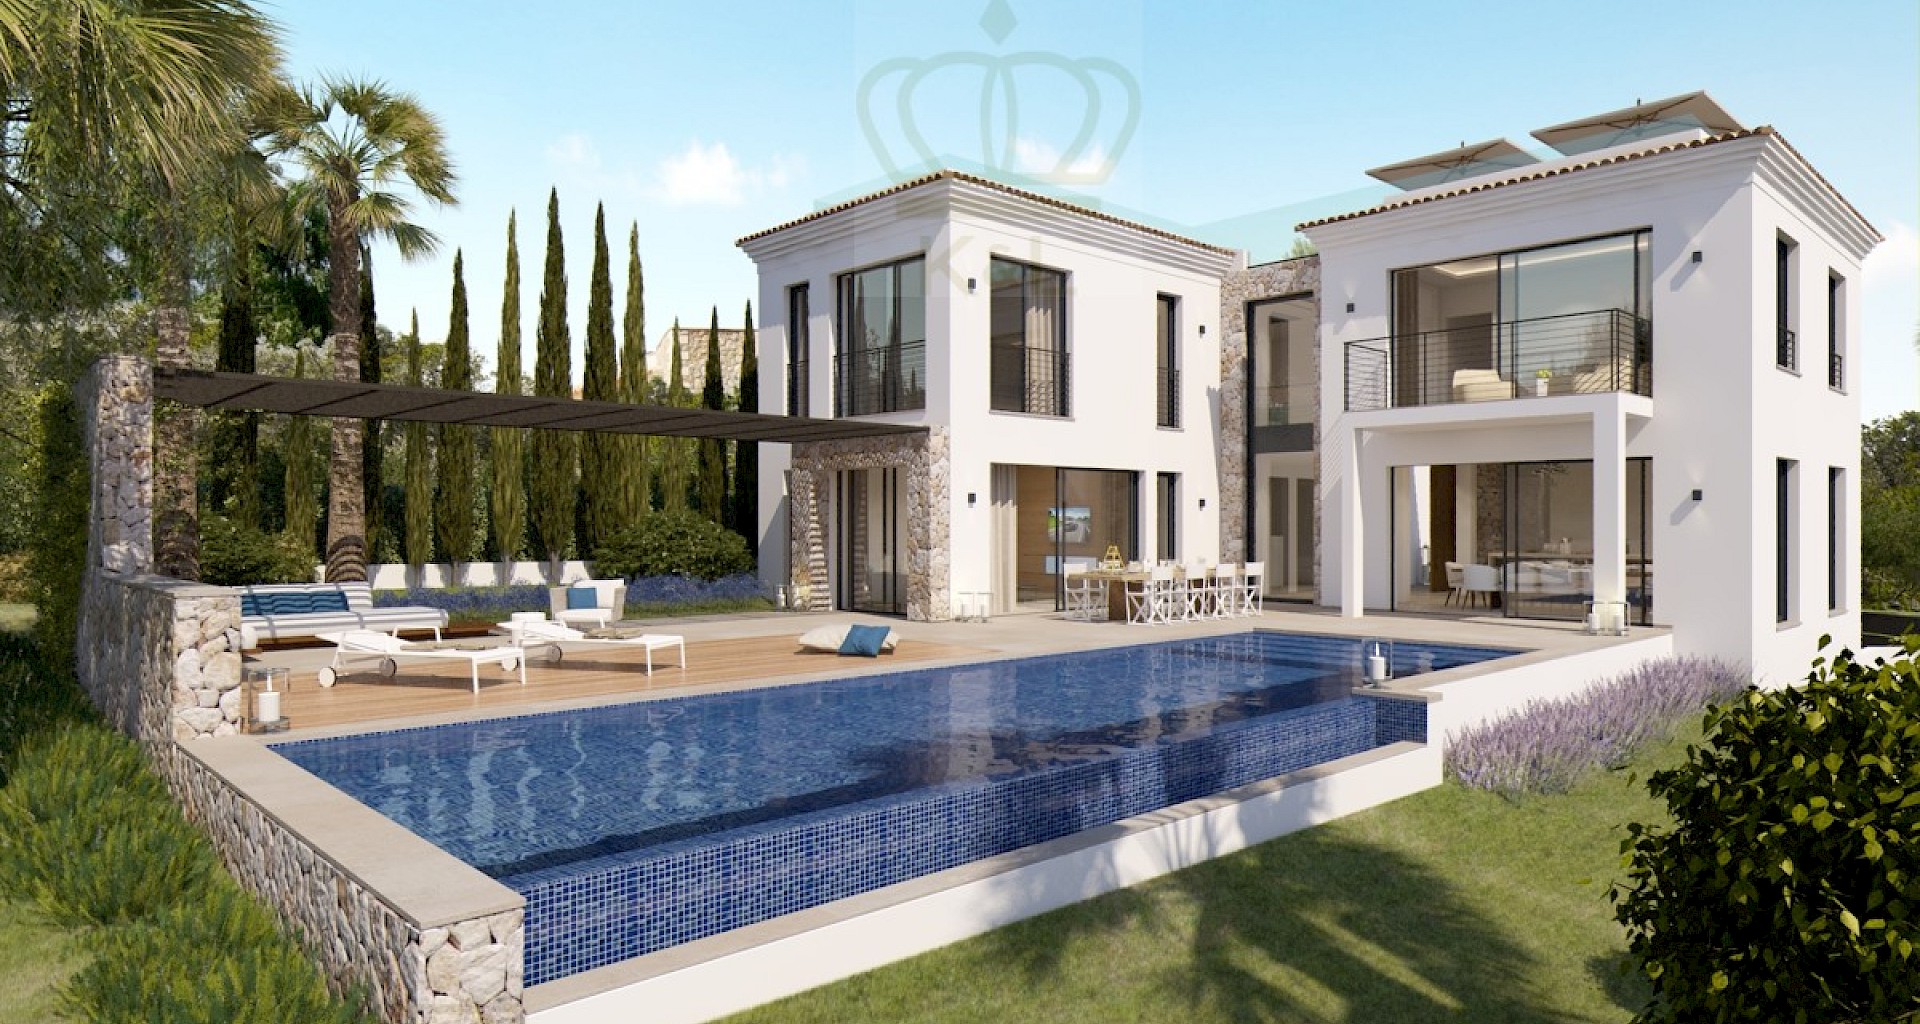 KROHN & LUEDEMANN Moderne Villa in Santa Ponsa mit Fertigstellung in 2021 